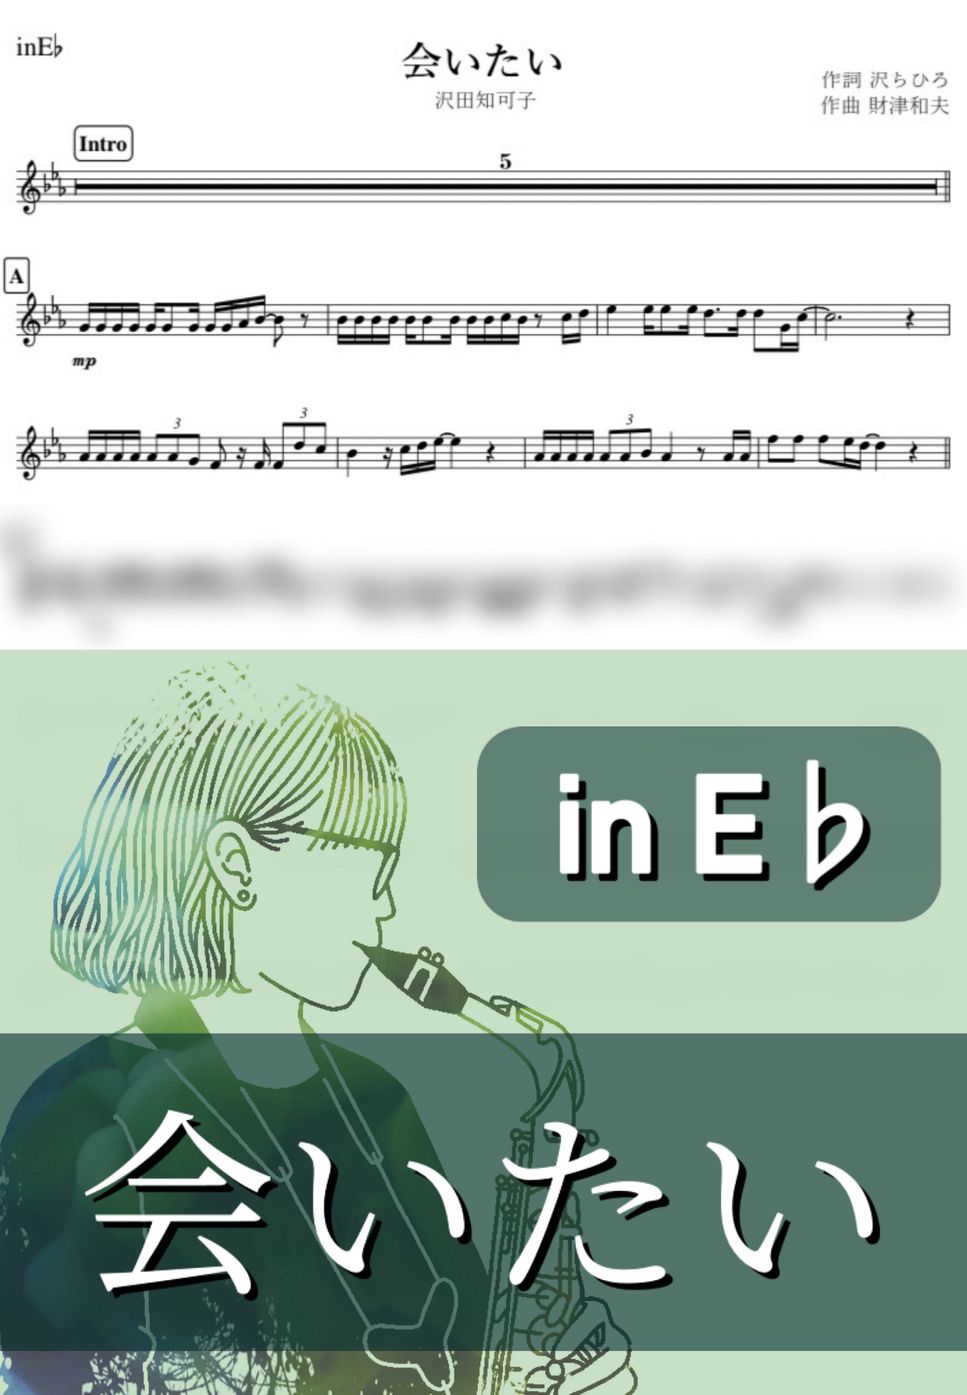 沢田知可子 - 会いたい (E♭) by kanamusic